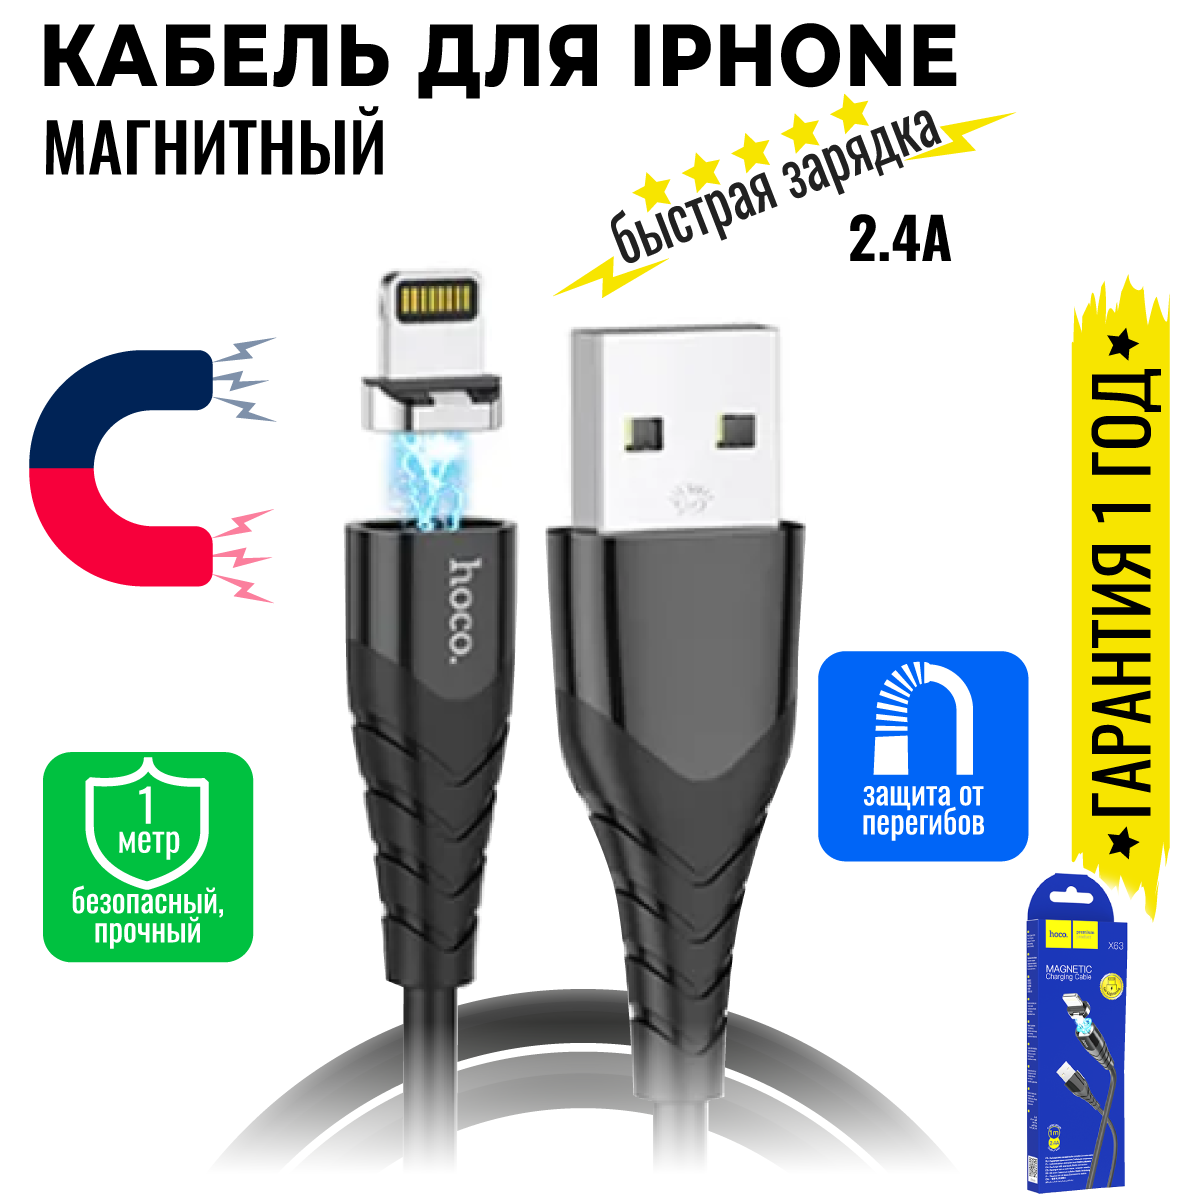 Кабель для iPhone, быстрая зарядка, 1 метр, магнитный, передача данных, длинный / USB провод на айфон iPad airPods / юсб шнур для разъема Lightning / Hoco X63